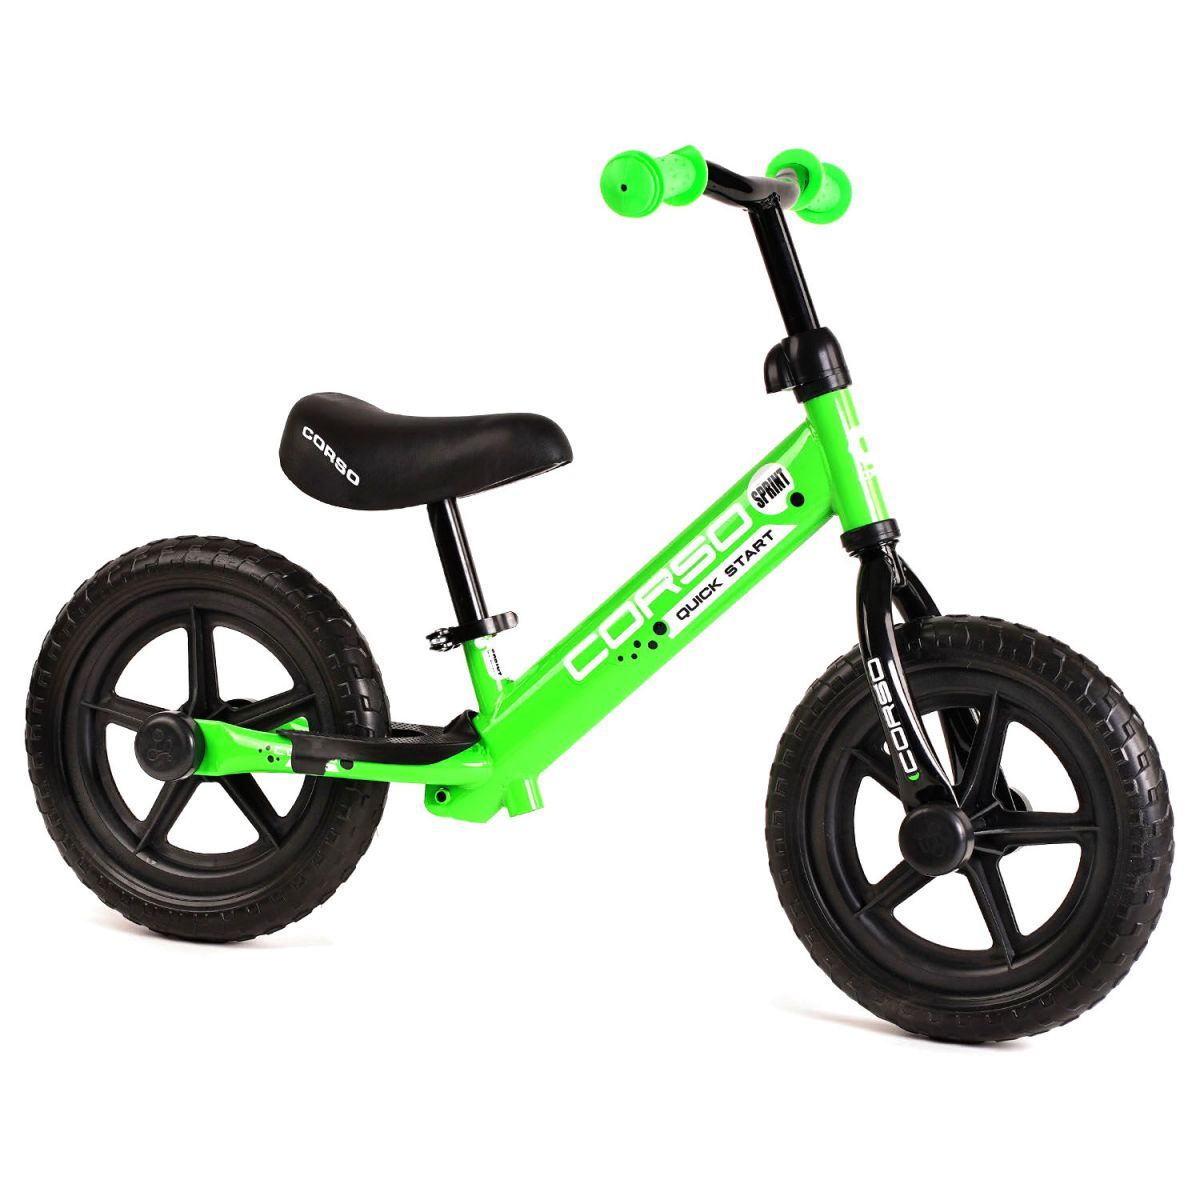 Уценка.  Велобег "CORSO" зеленый со стальной рамой, колесо 12"  - не правильно крутиться одно колесо, ездит восьмеркой